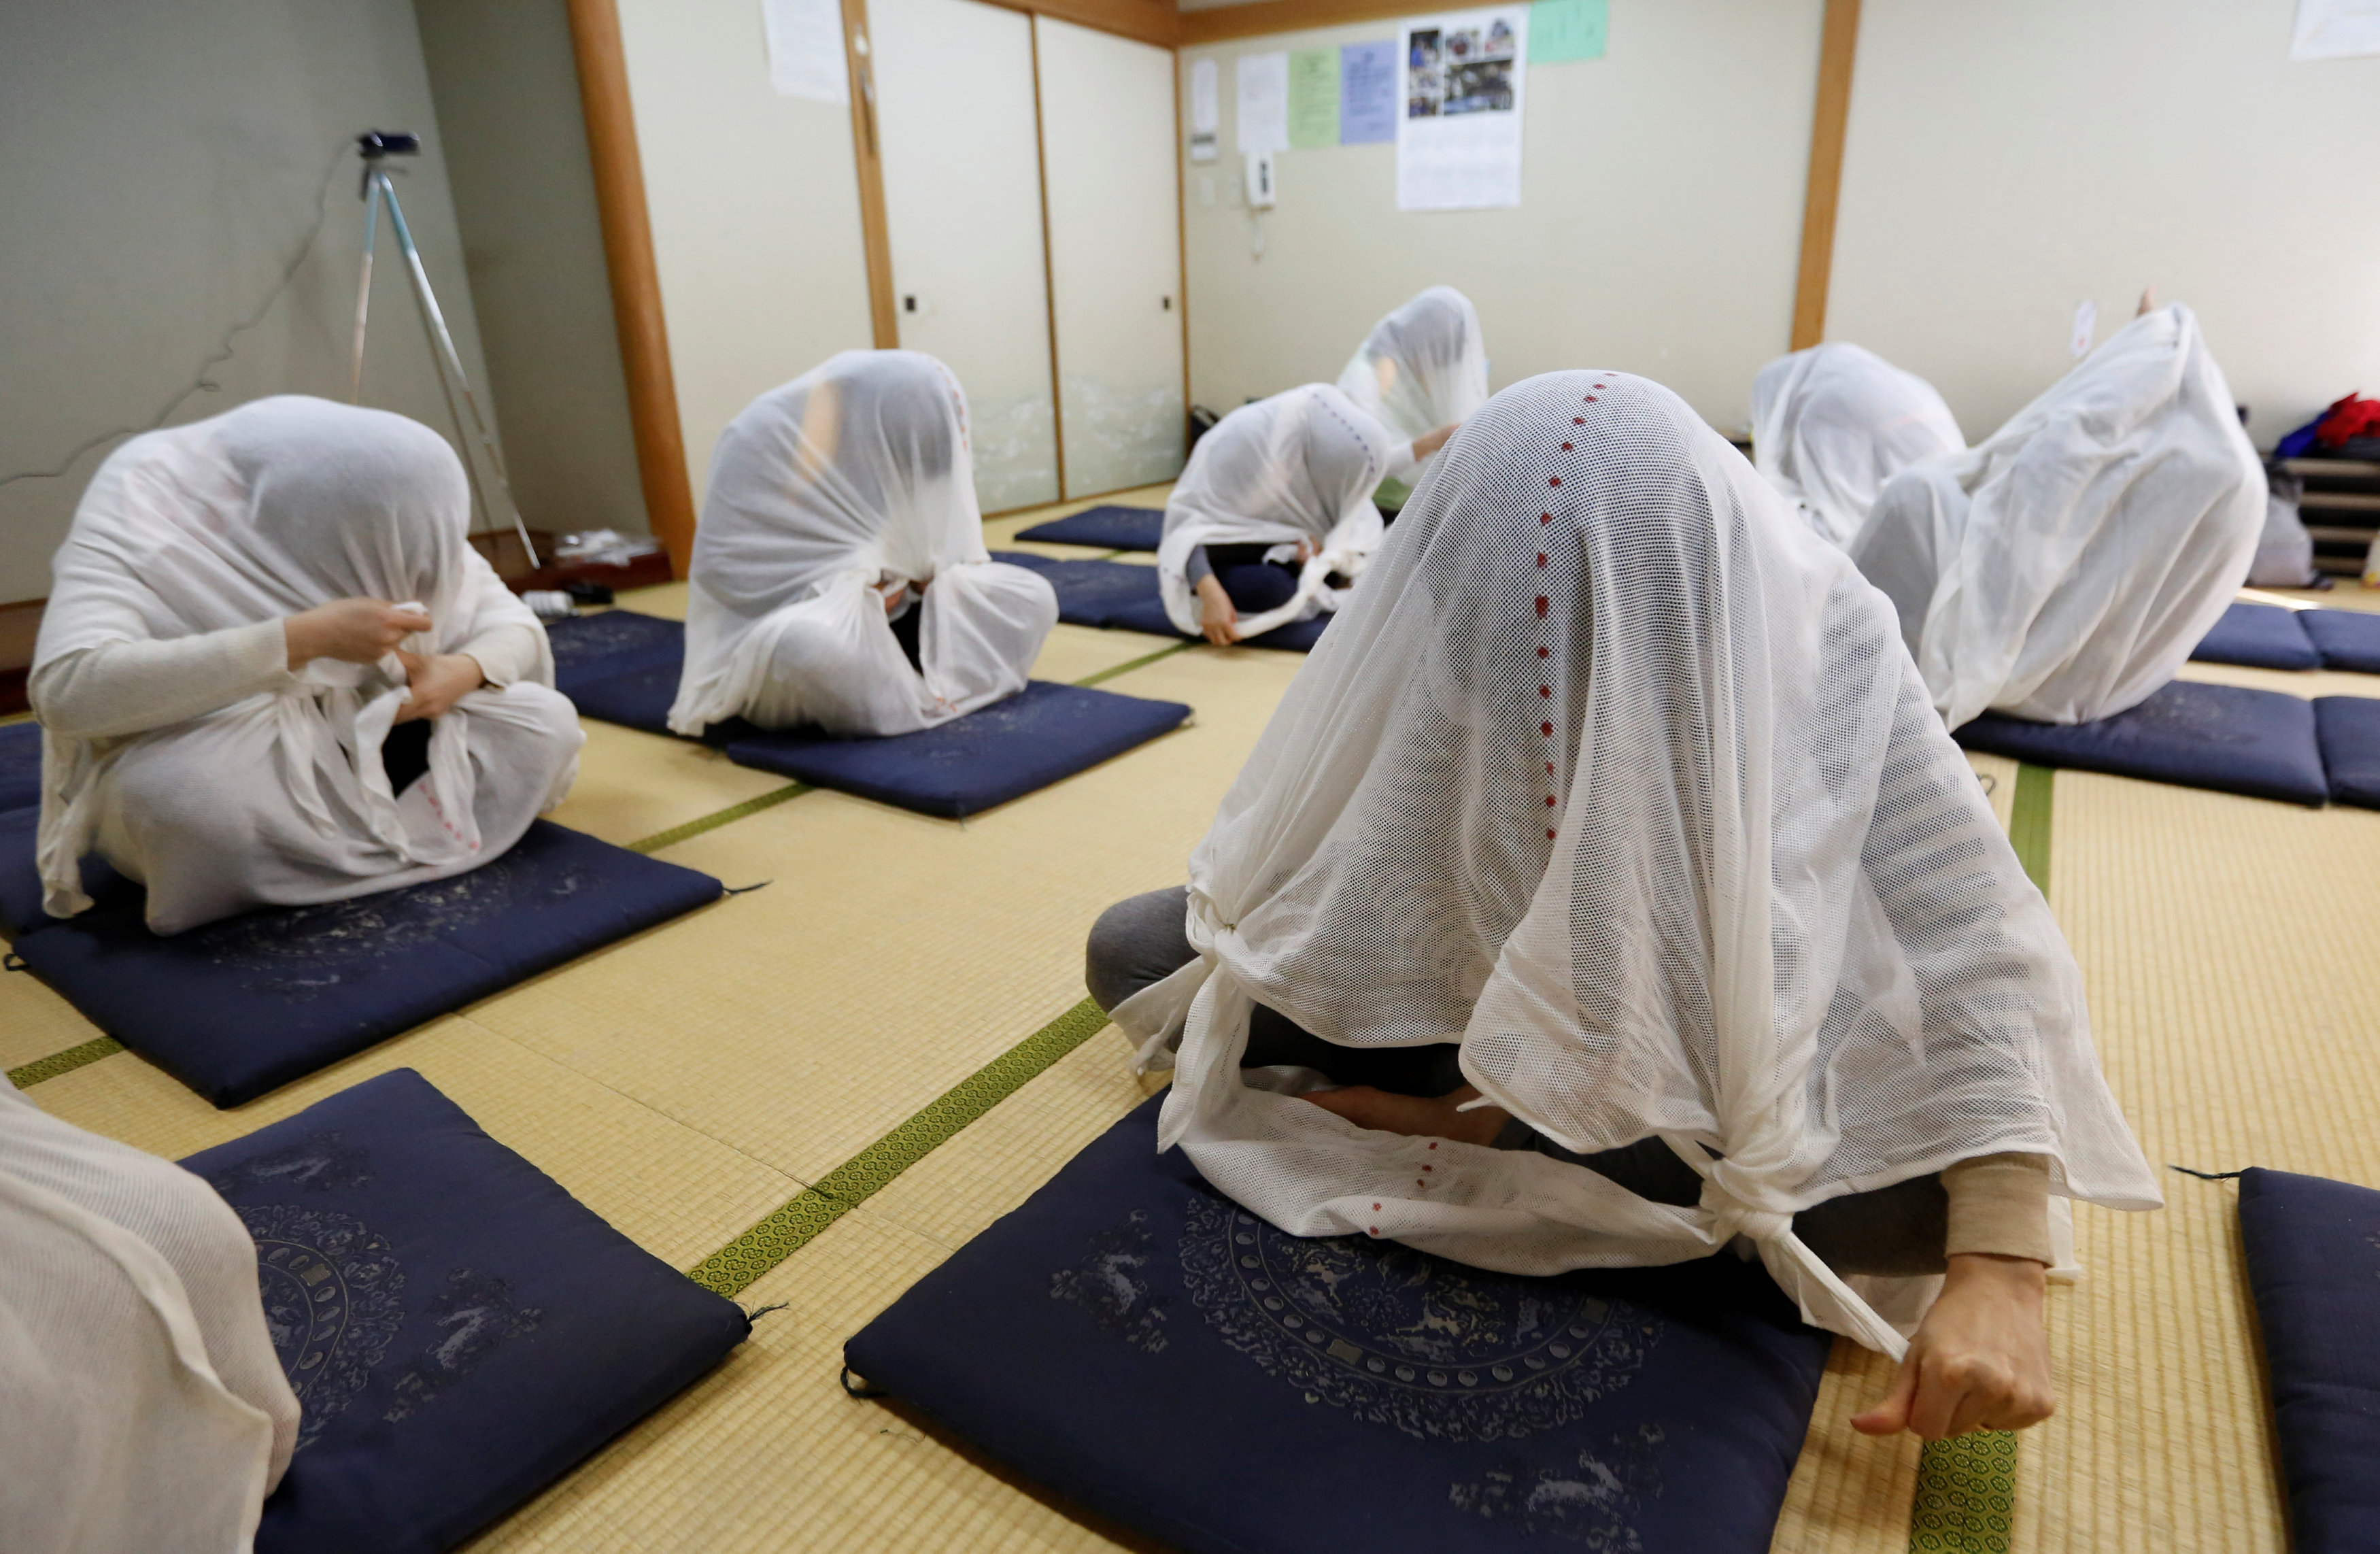 جلسة علاج أوتوناماكى فى اليابان للتخلص من آلام الجسم